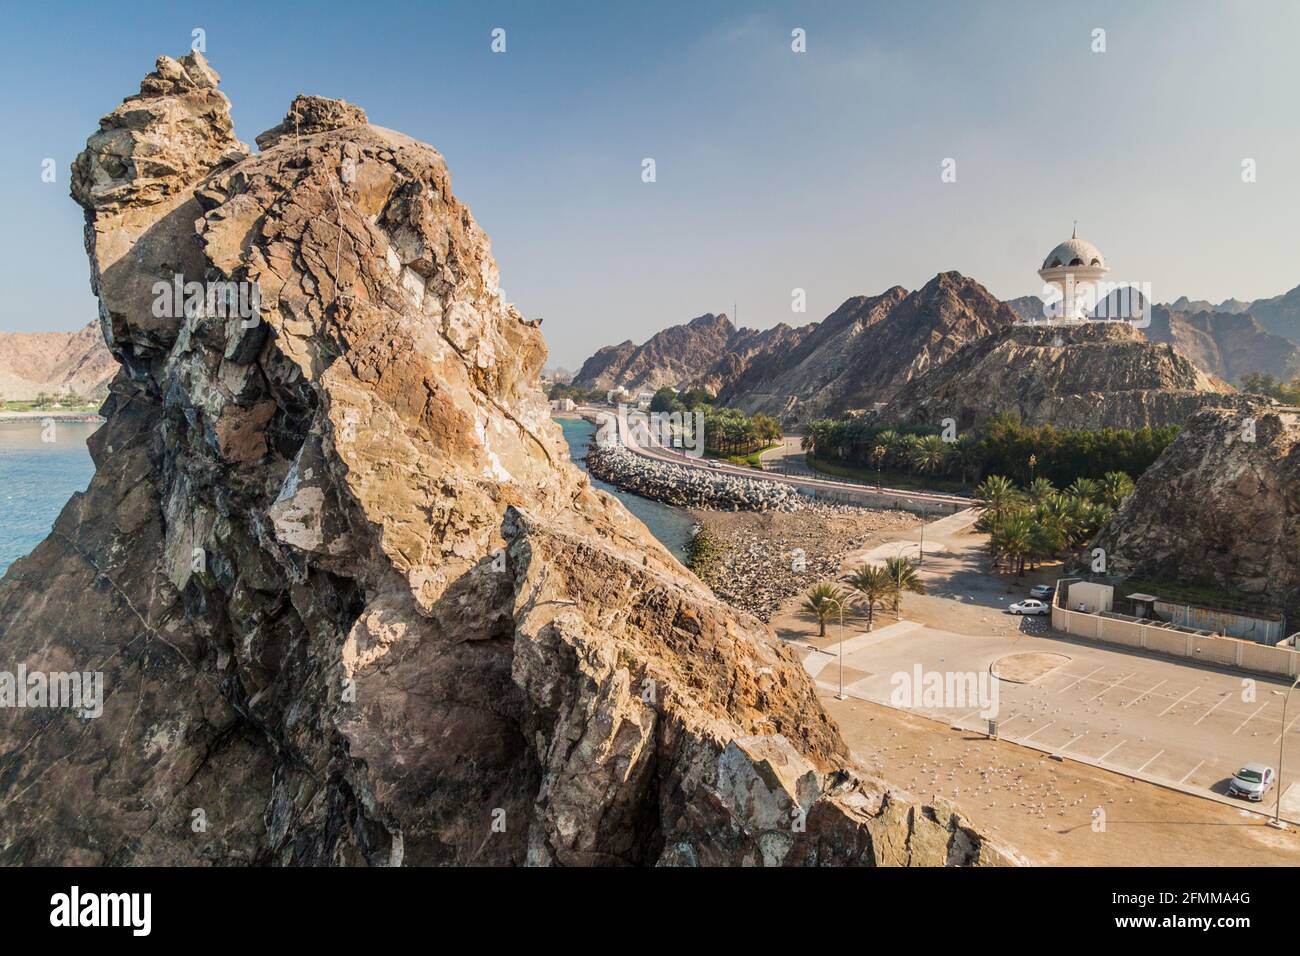 Brûleur d'encens géant et rochers à Muscat, Oman Banque D'Images